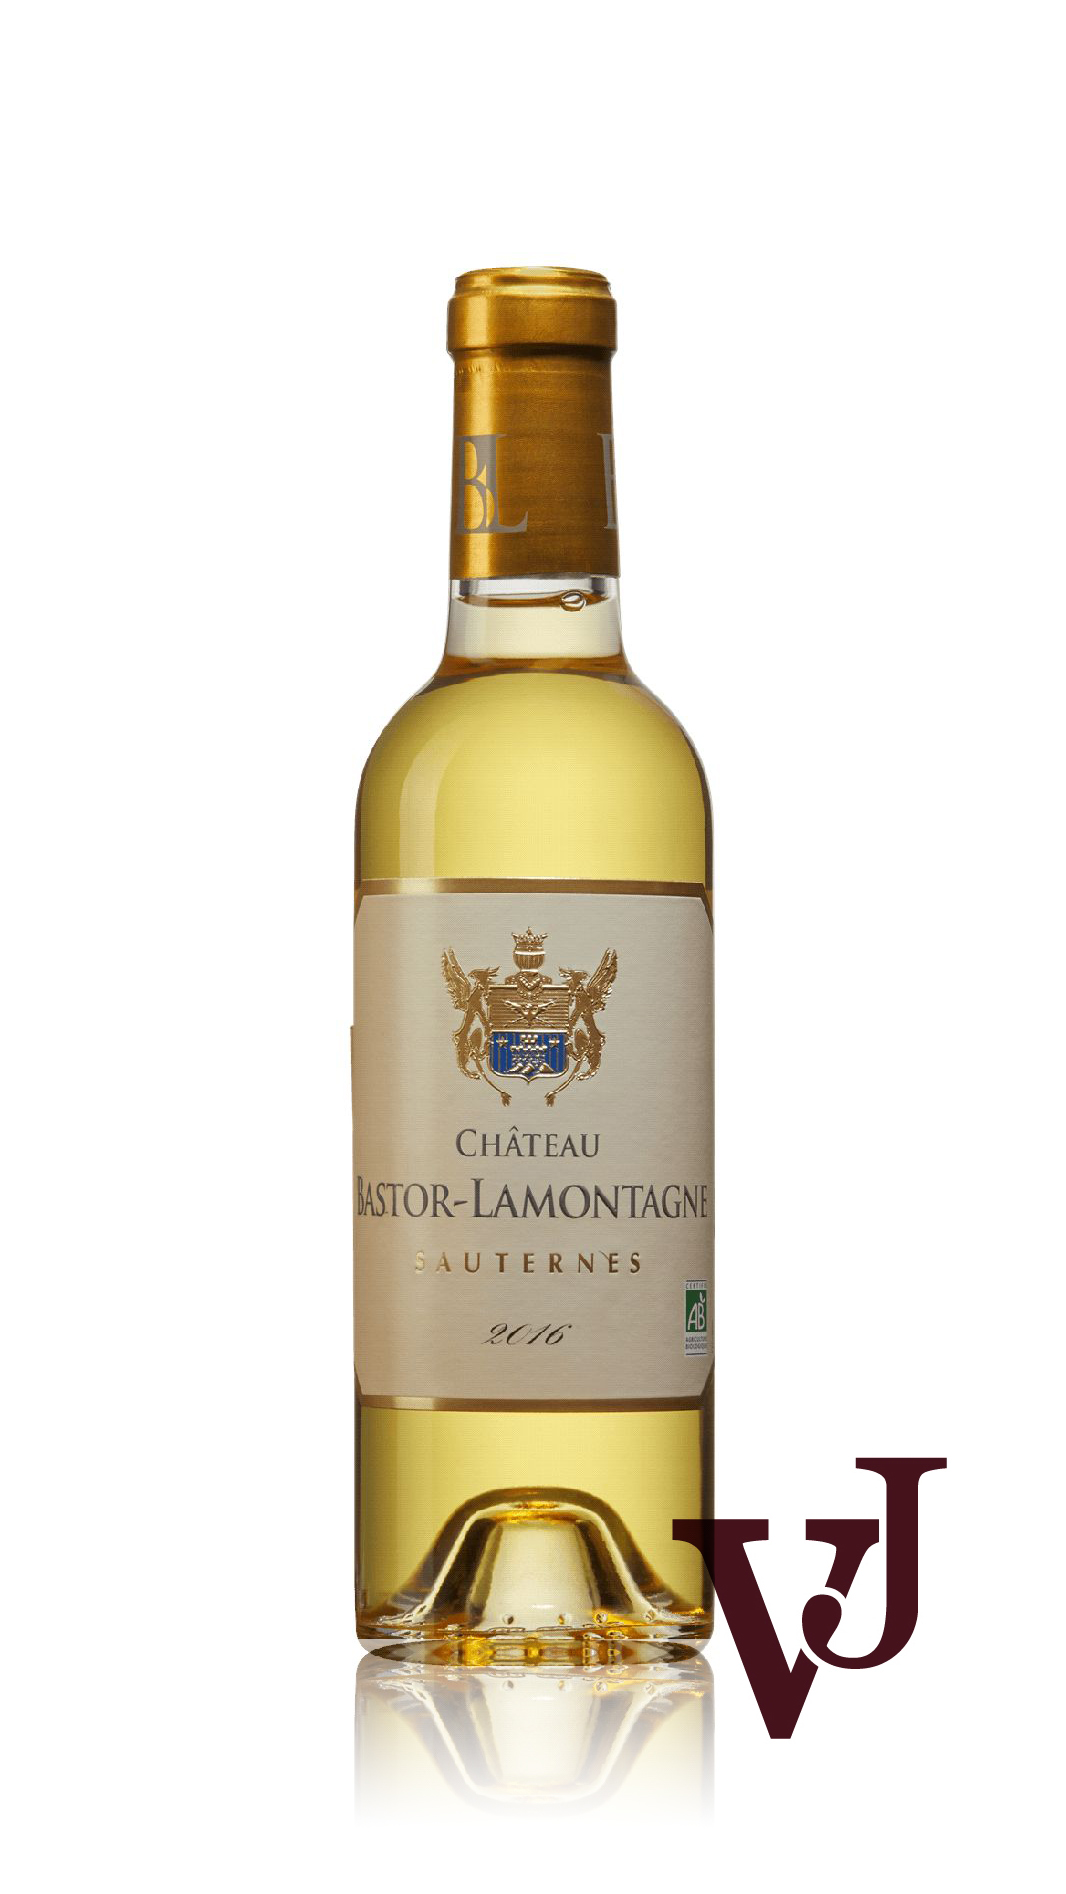 Vitt Vin - Château Bastor-Lamontagne artikel nummer 468402 från producenten Terres Bordelaises från området Frankrike